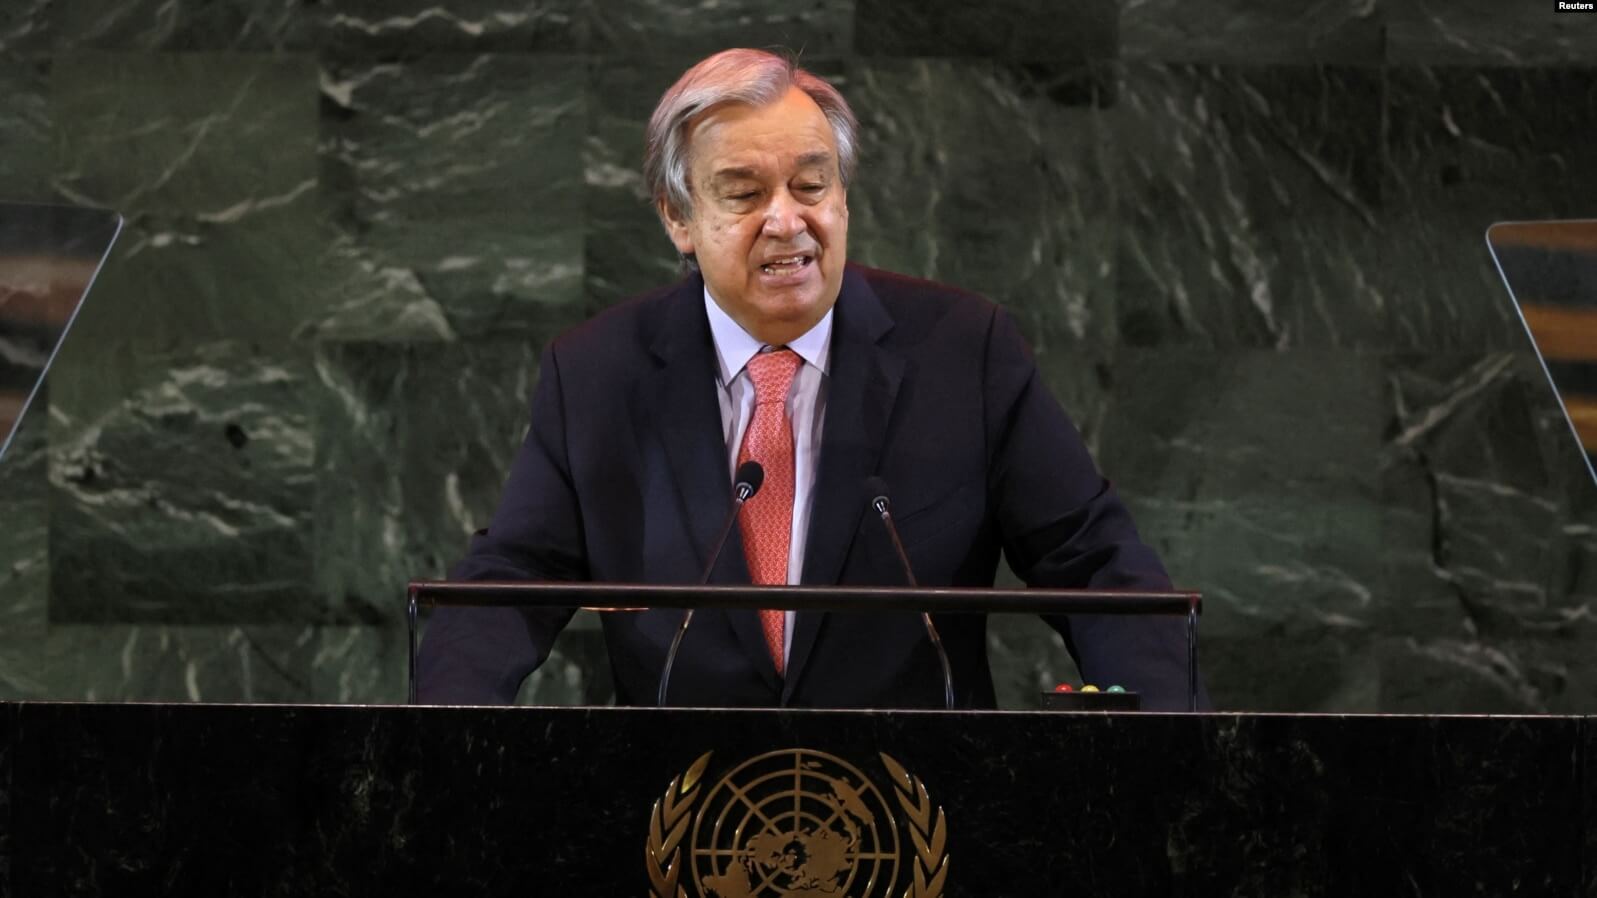 El secretario general de las Naciones Unidas, Antonio Guterres, pronuncia el discurso de apertura de la 77ª Asamblea General de la ONU, el 20 de septiembre de 2022.